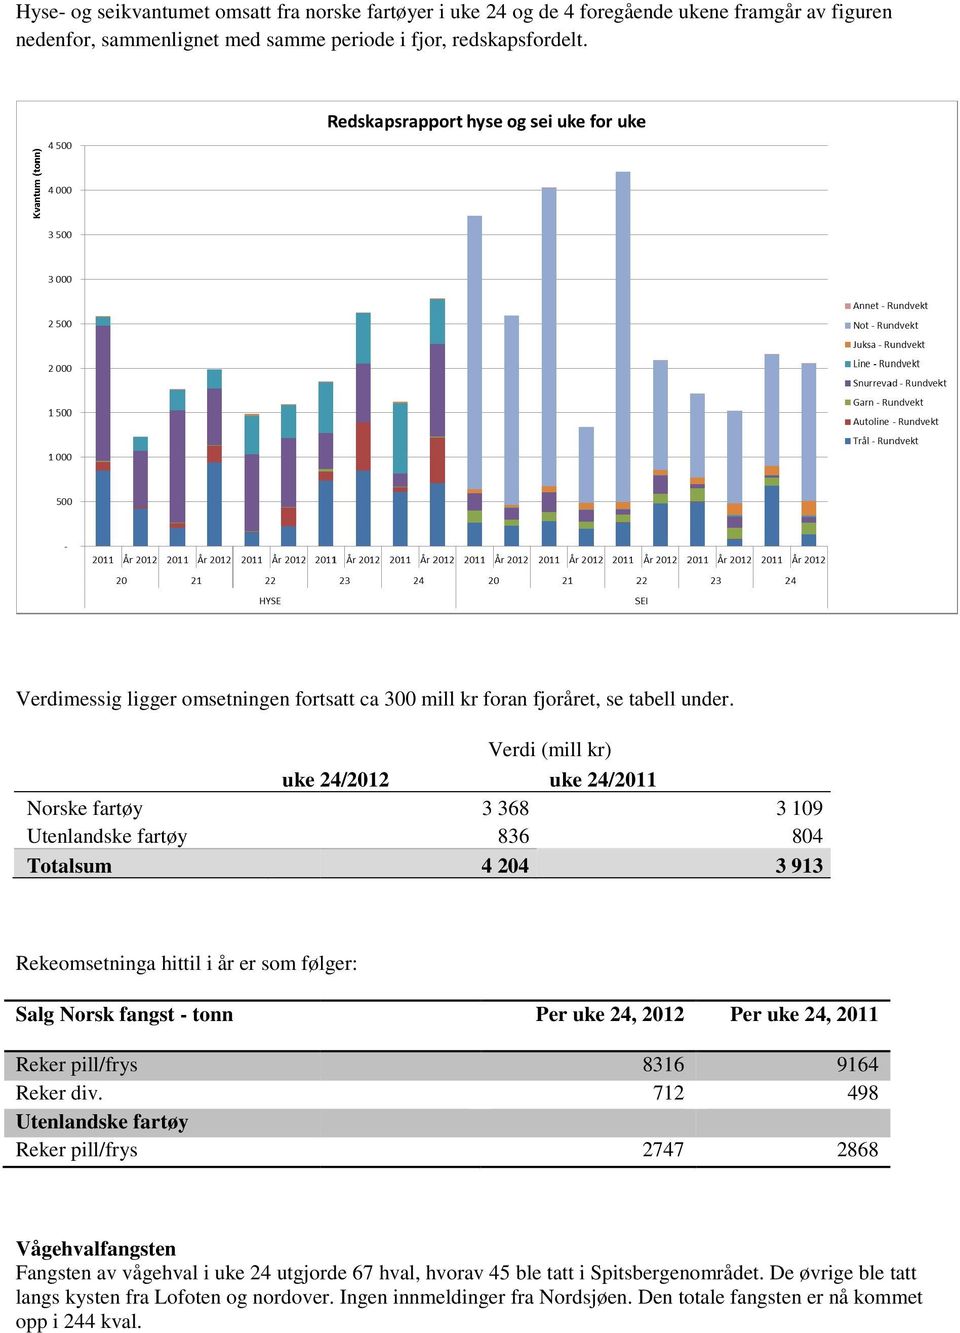 Norske fartøy Utenlandske fartøy Totalsum Verdi (mill kr) uke 24/2012 uke 24/2011 3 368 836 4 204 3 109 804 3 913 Rekeomsetninga hittil i år er som følger: Salg Norsk fangst - tonn Per uke 24, 2012